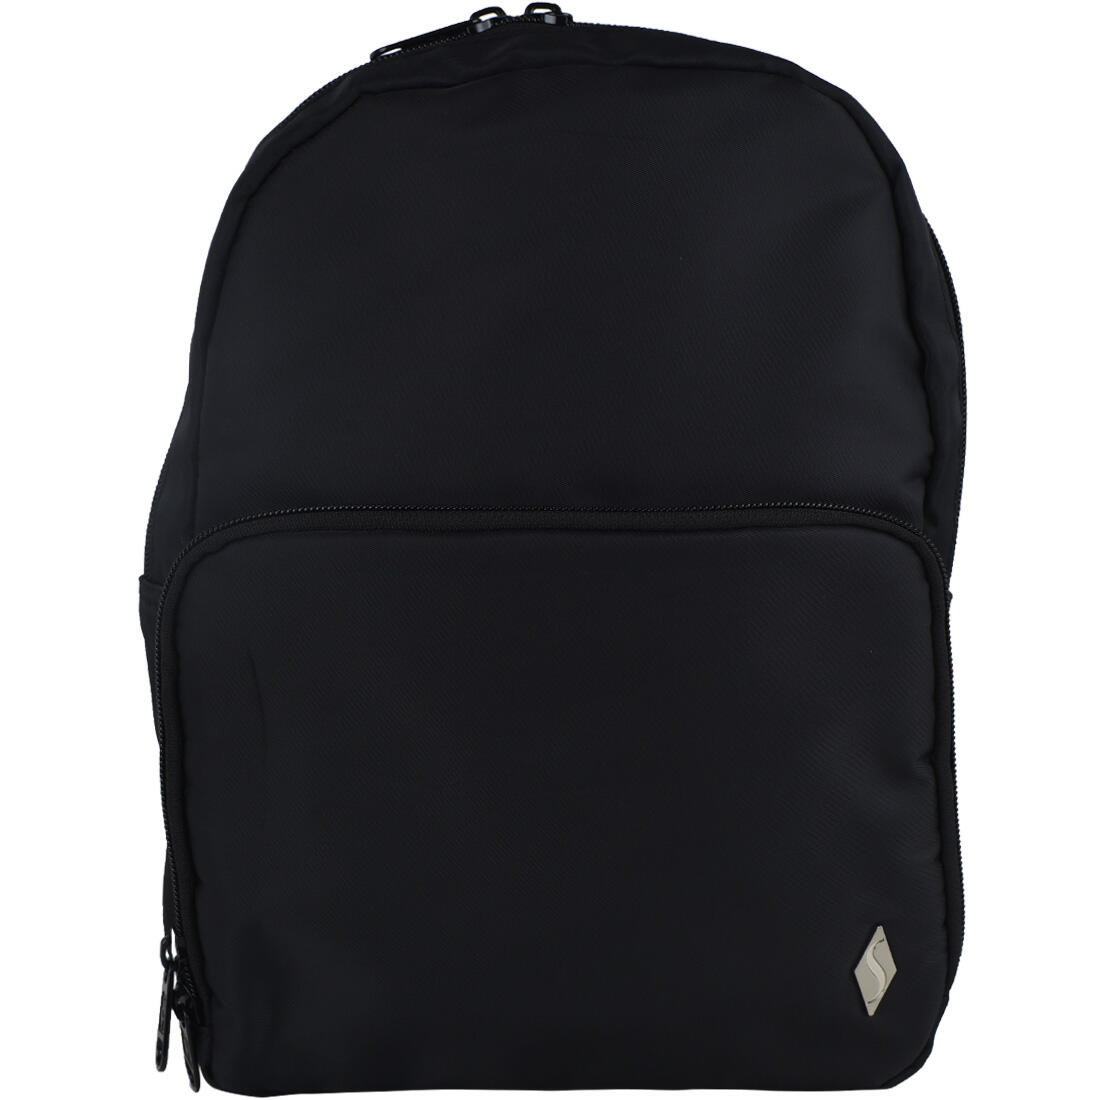 Plecak, Skechers Jetsetter Backpack SKCH6887-BLK, pojemność: 15 L